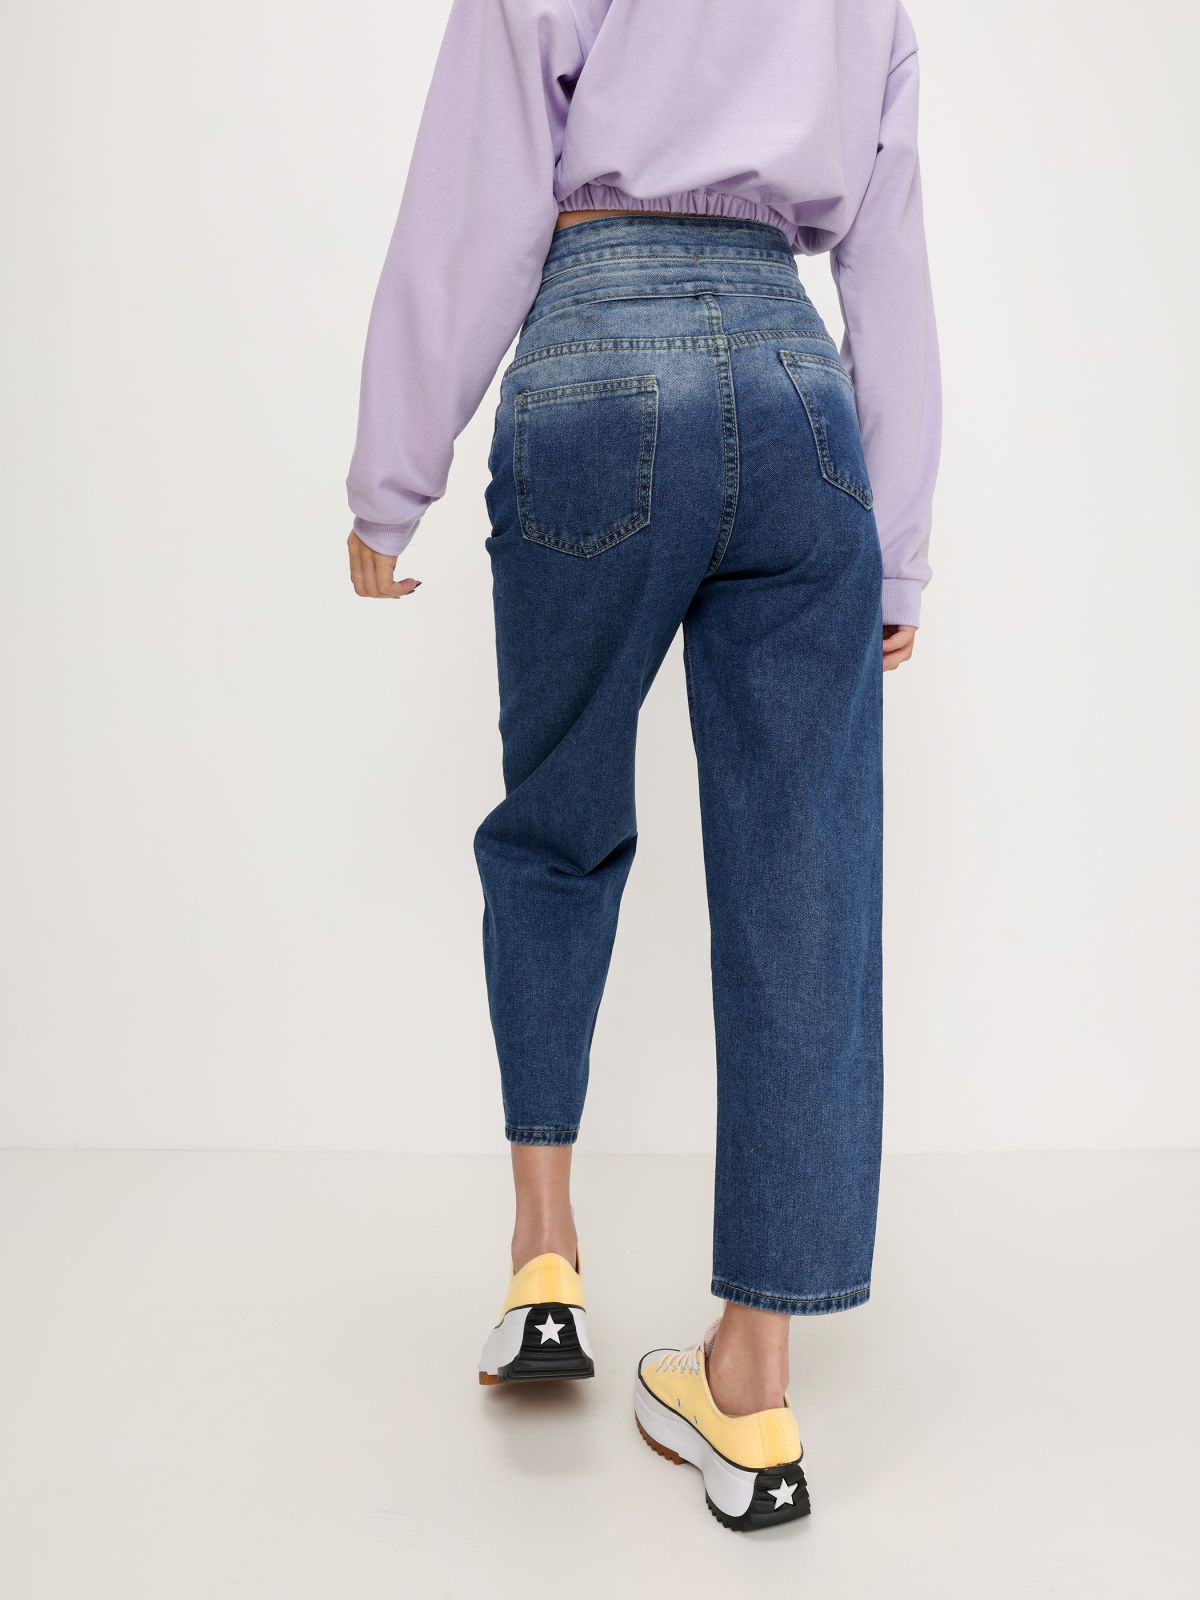  ג'ינס ארוך עם פתחים של QUESTION MARK